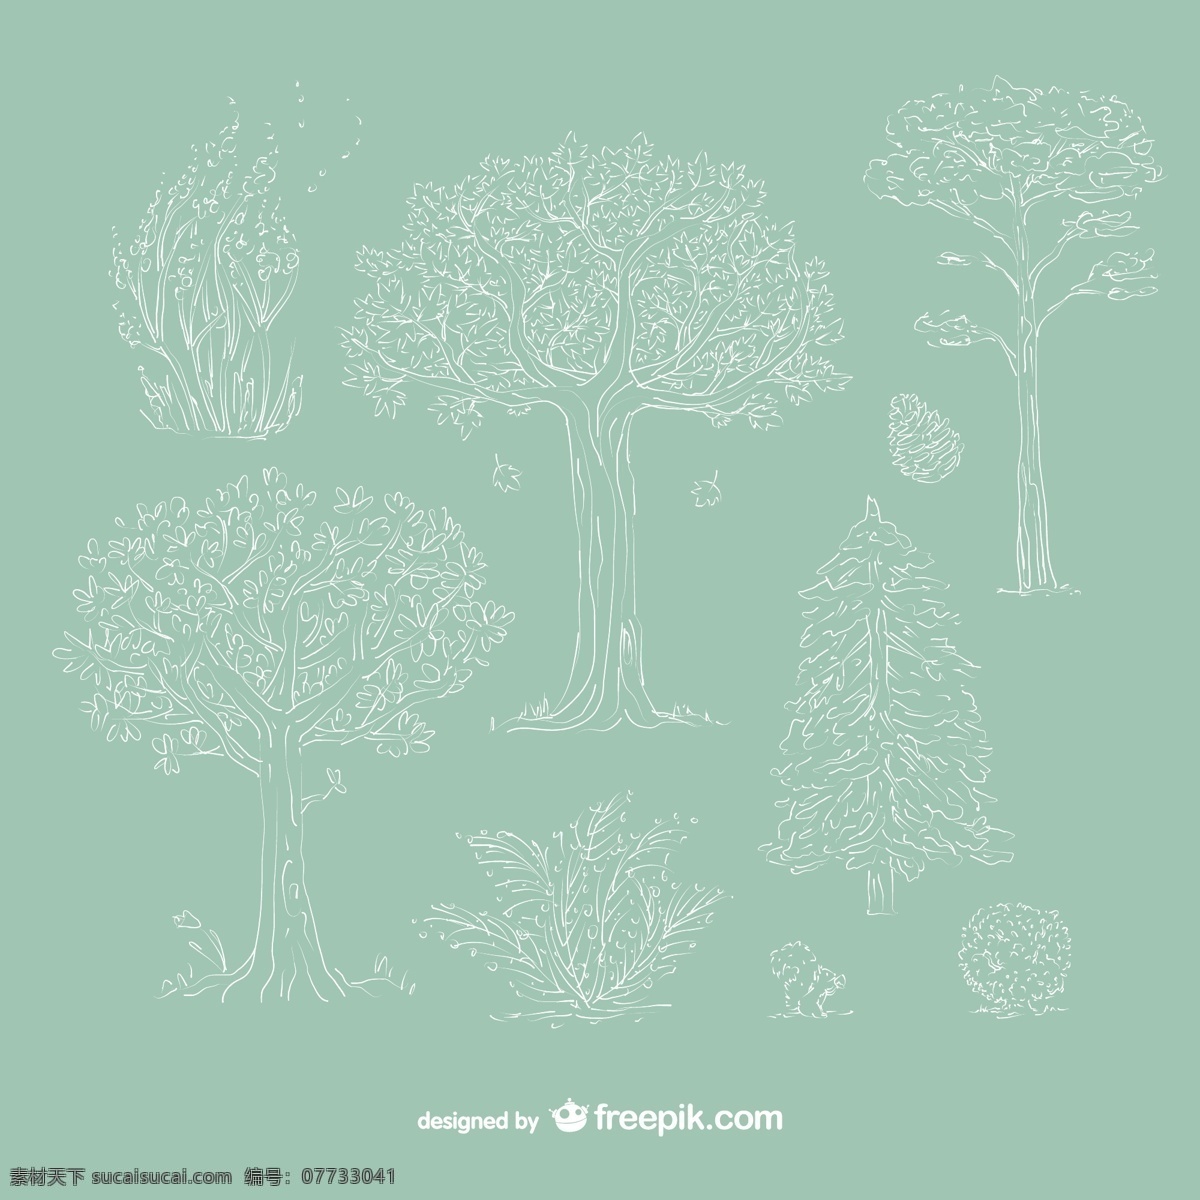 手繪樹木 手繪 樹木 樹 描繪 植物 绿色